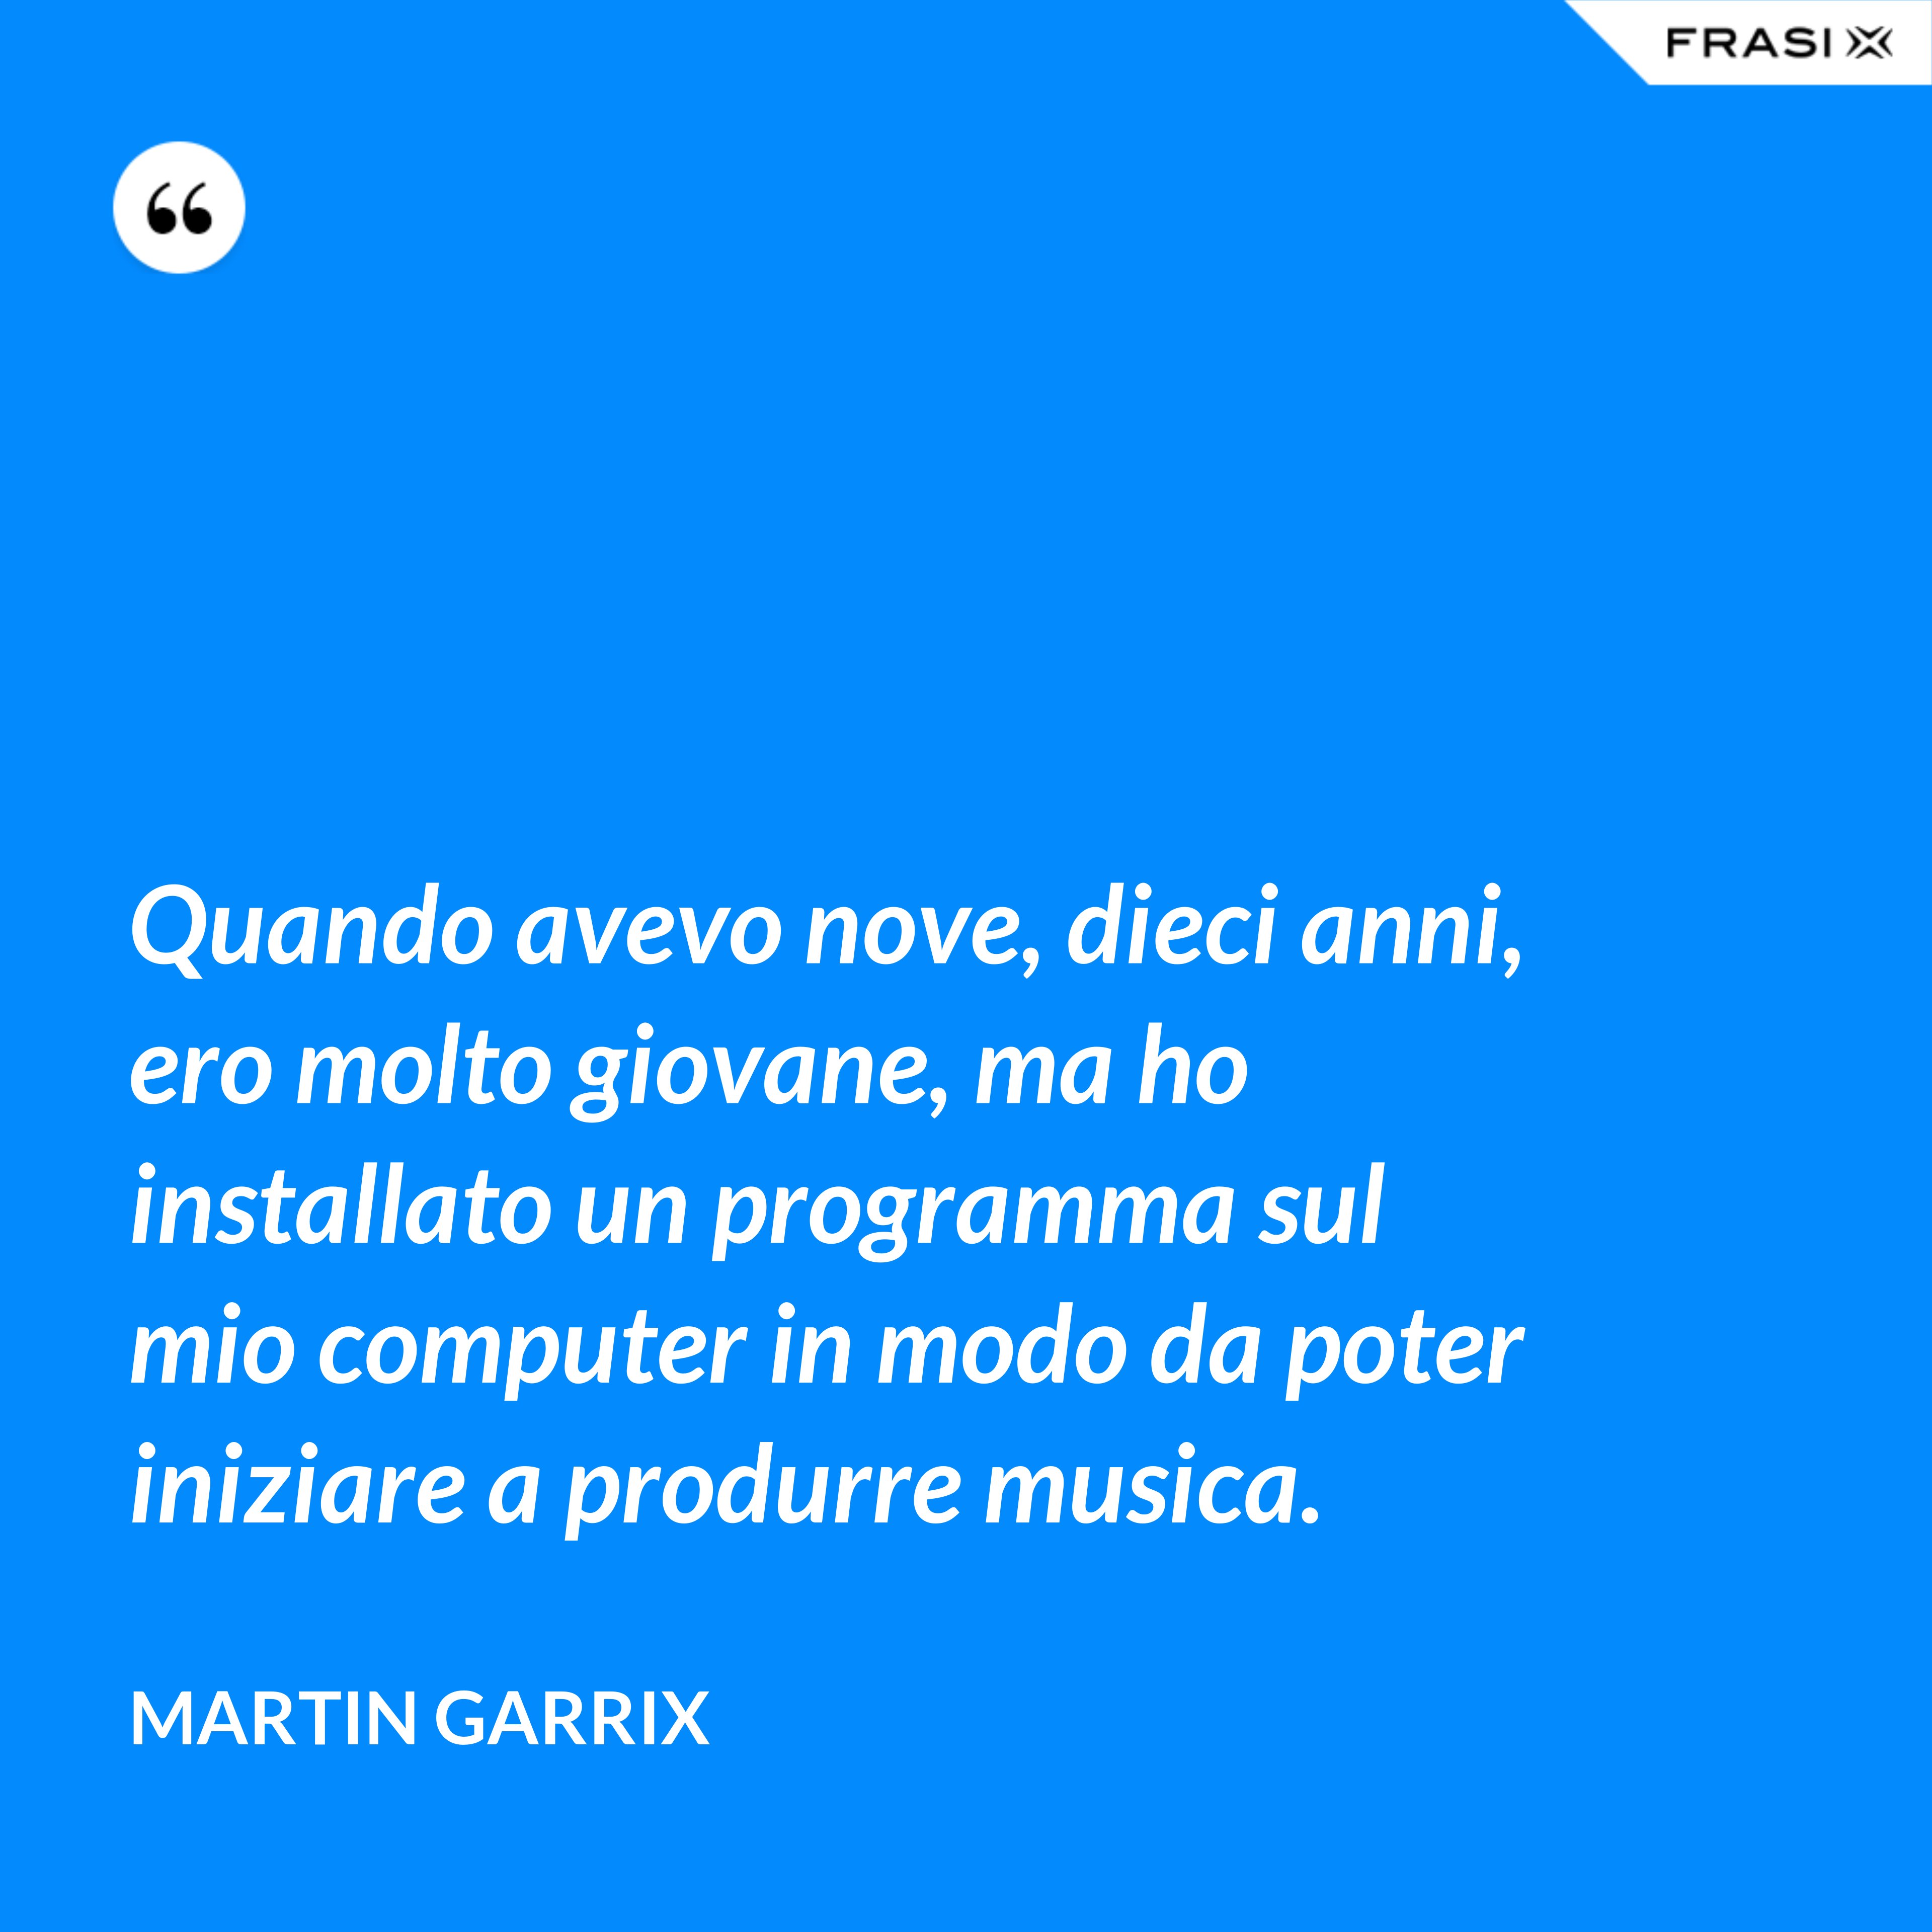 Quando avevo nove, dieci anni, ero molto giovane, ma ho installato un programma sul mio computer in modo da poter iniziare a produrre musica. - Martin Garrix